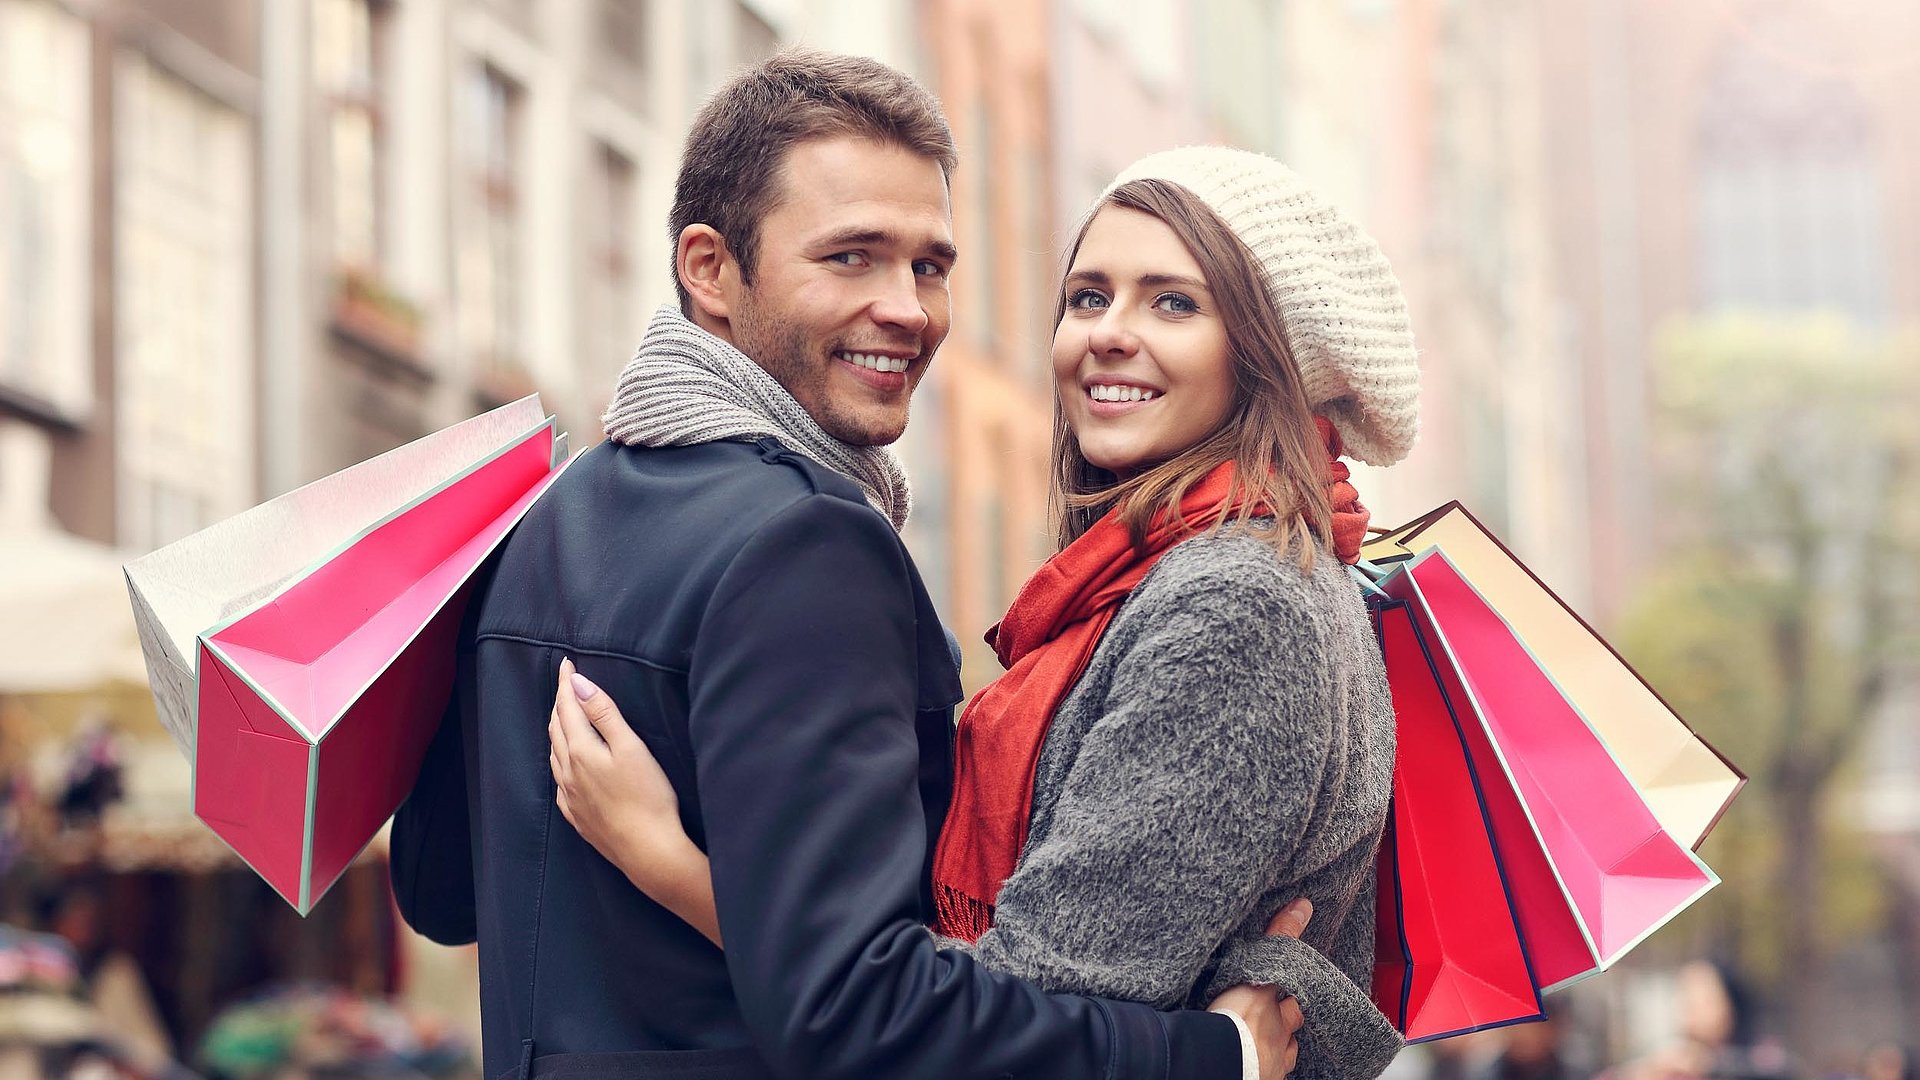 Einkaufen in Nürnberg - Paar steht in Einkaufsstraße zwischen Stadthäusern und lächelt in die Kamera